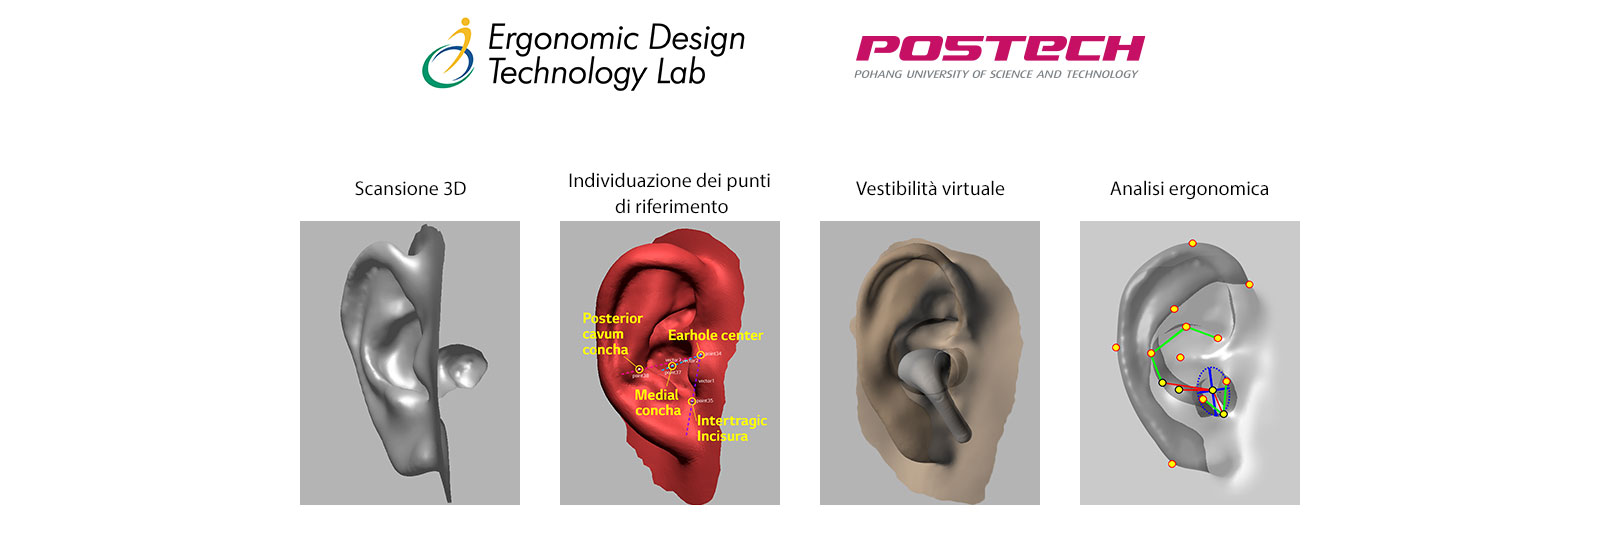 Immagine in cui un  modello 3D dell’orecchio viene sviluppato in 4 fasi.